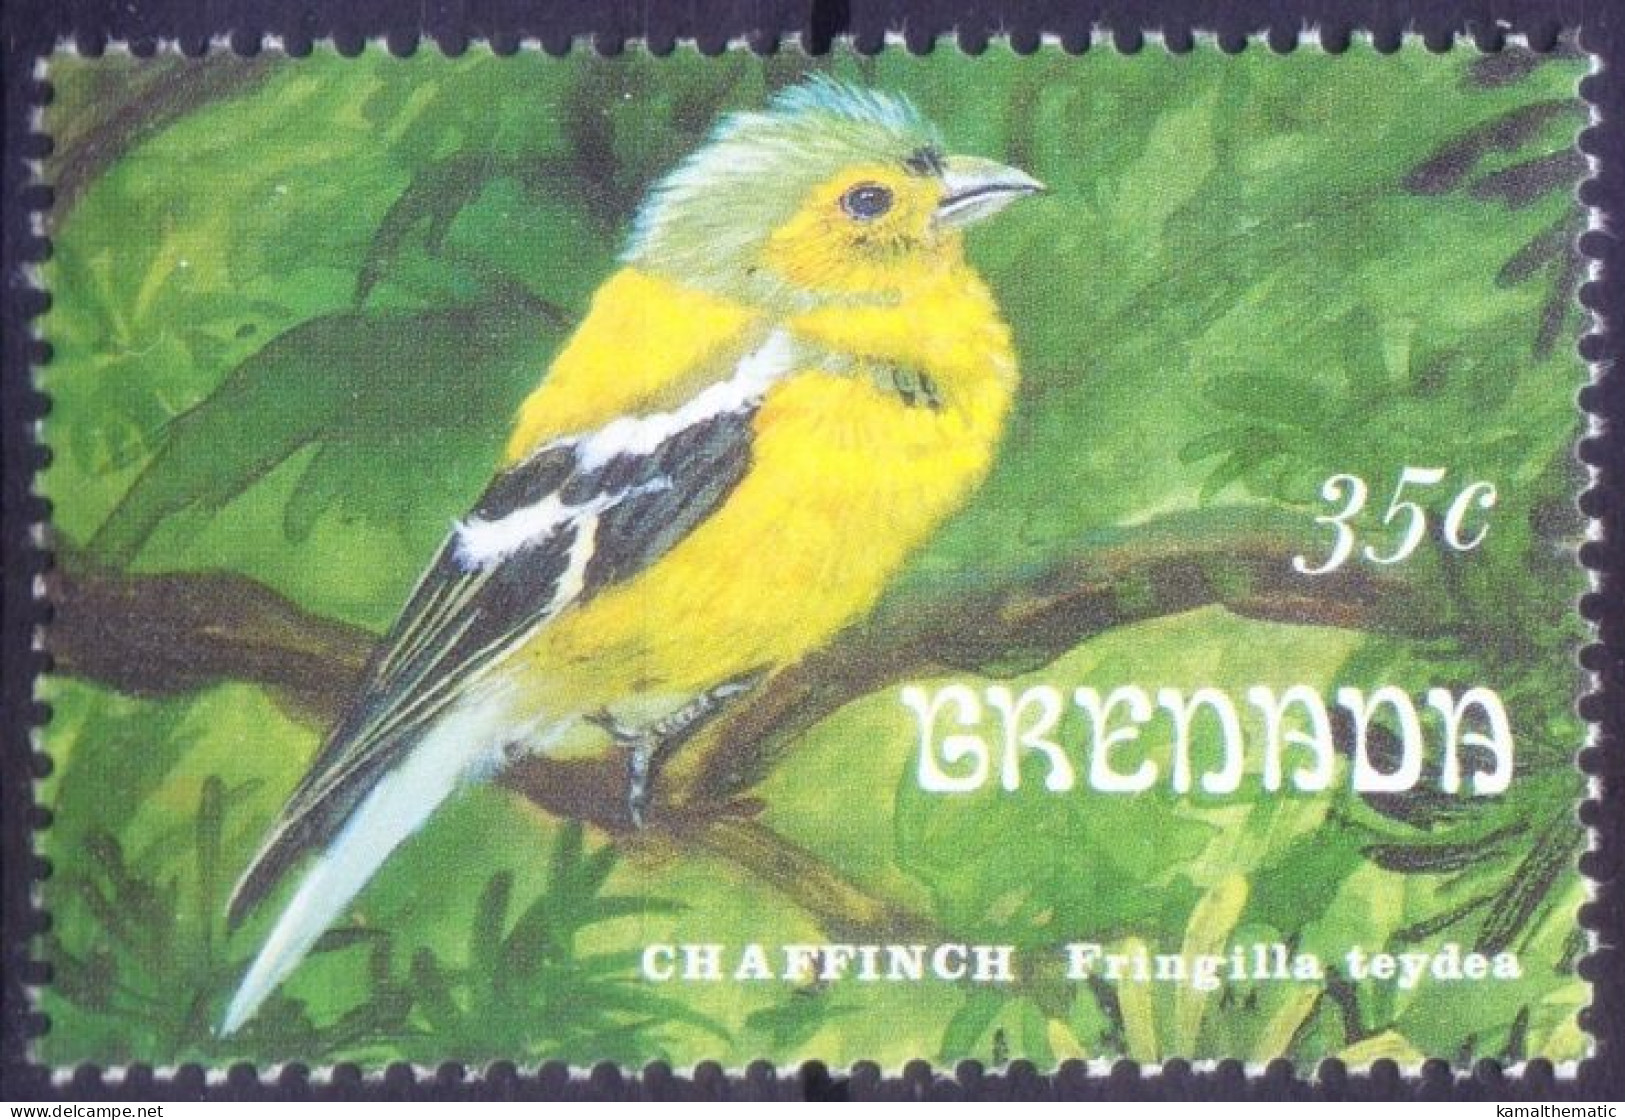 Common Chaffinch, Song Birds, Grenada 1993 MNH - - Pájaros Cantores (Passeri)